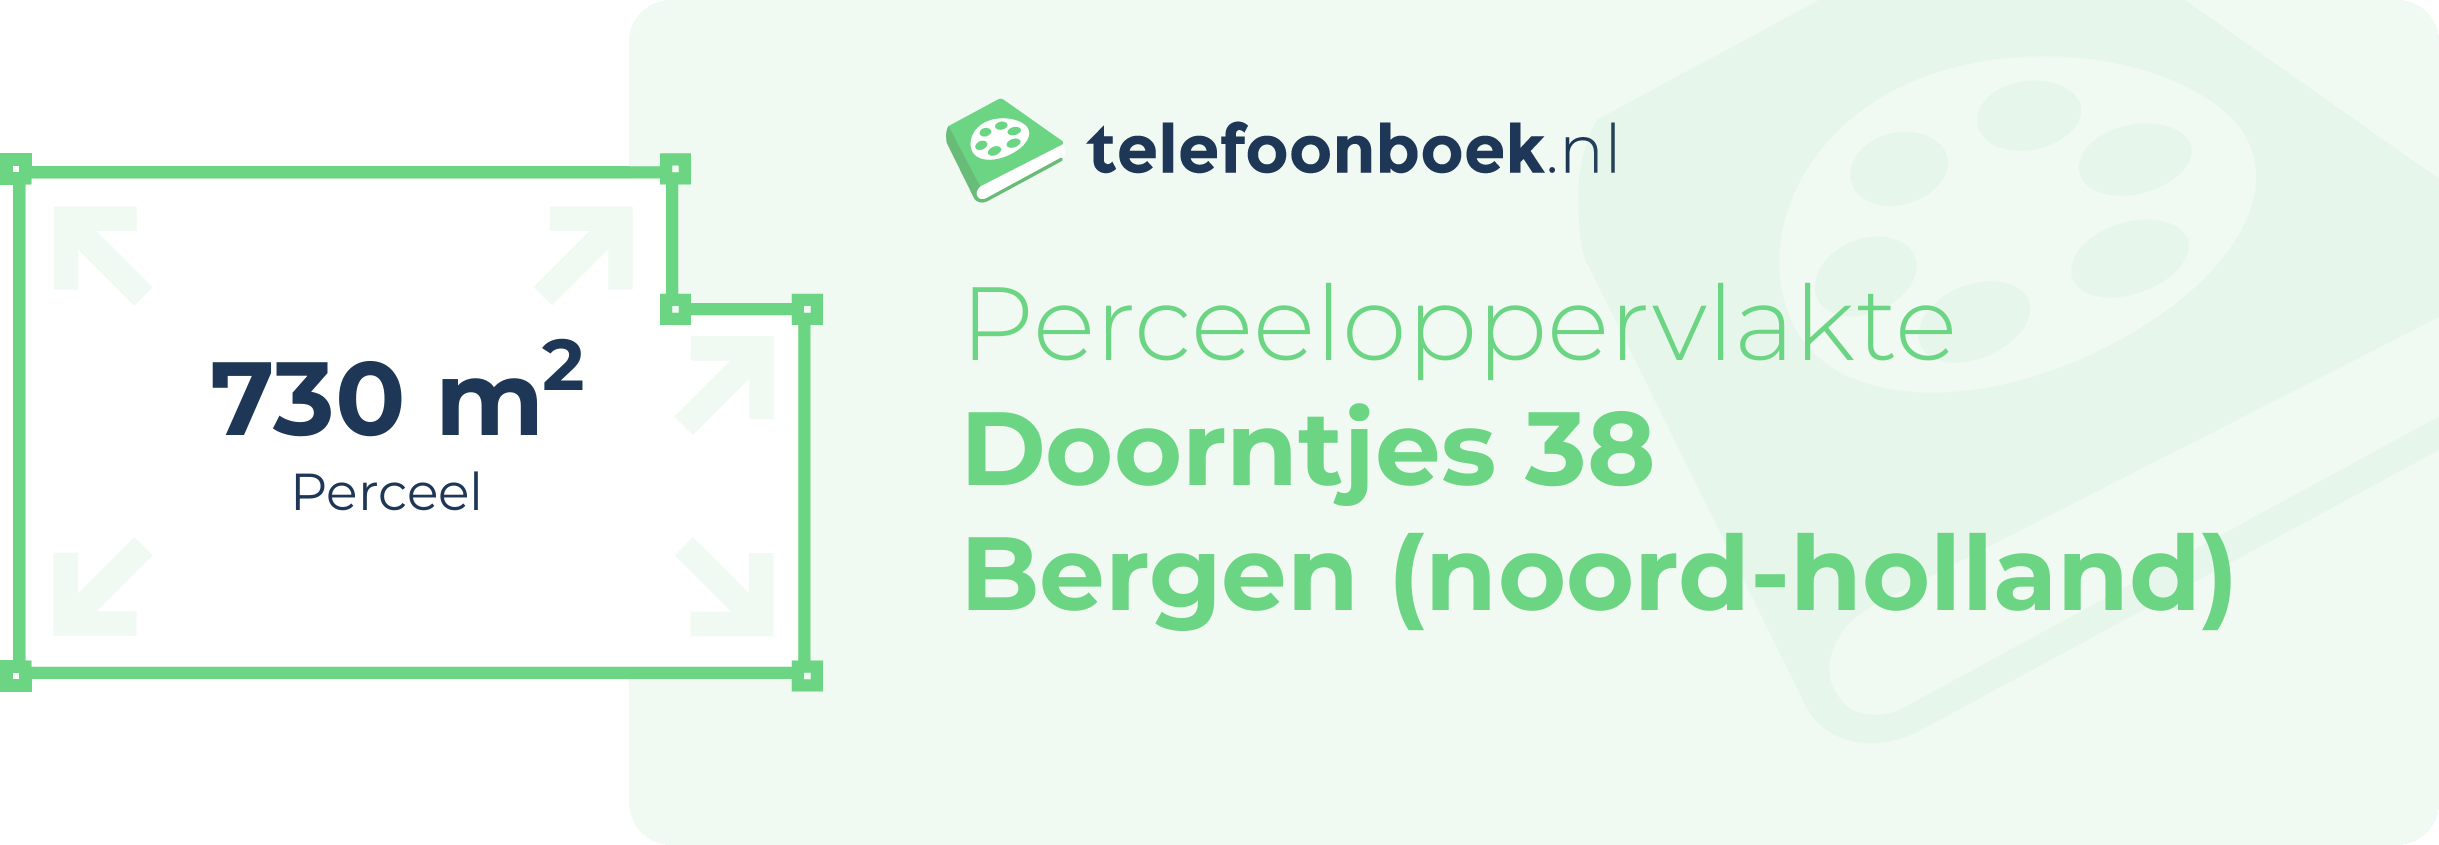 Perceeloppervlakte Doorntjes 38 Bergen (Noord-Holland)